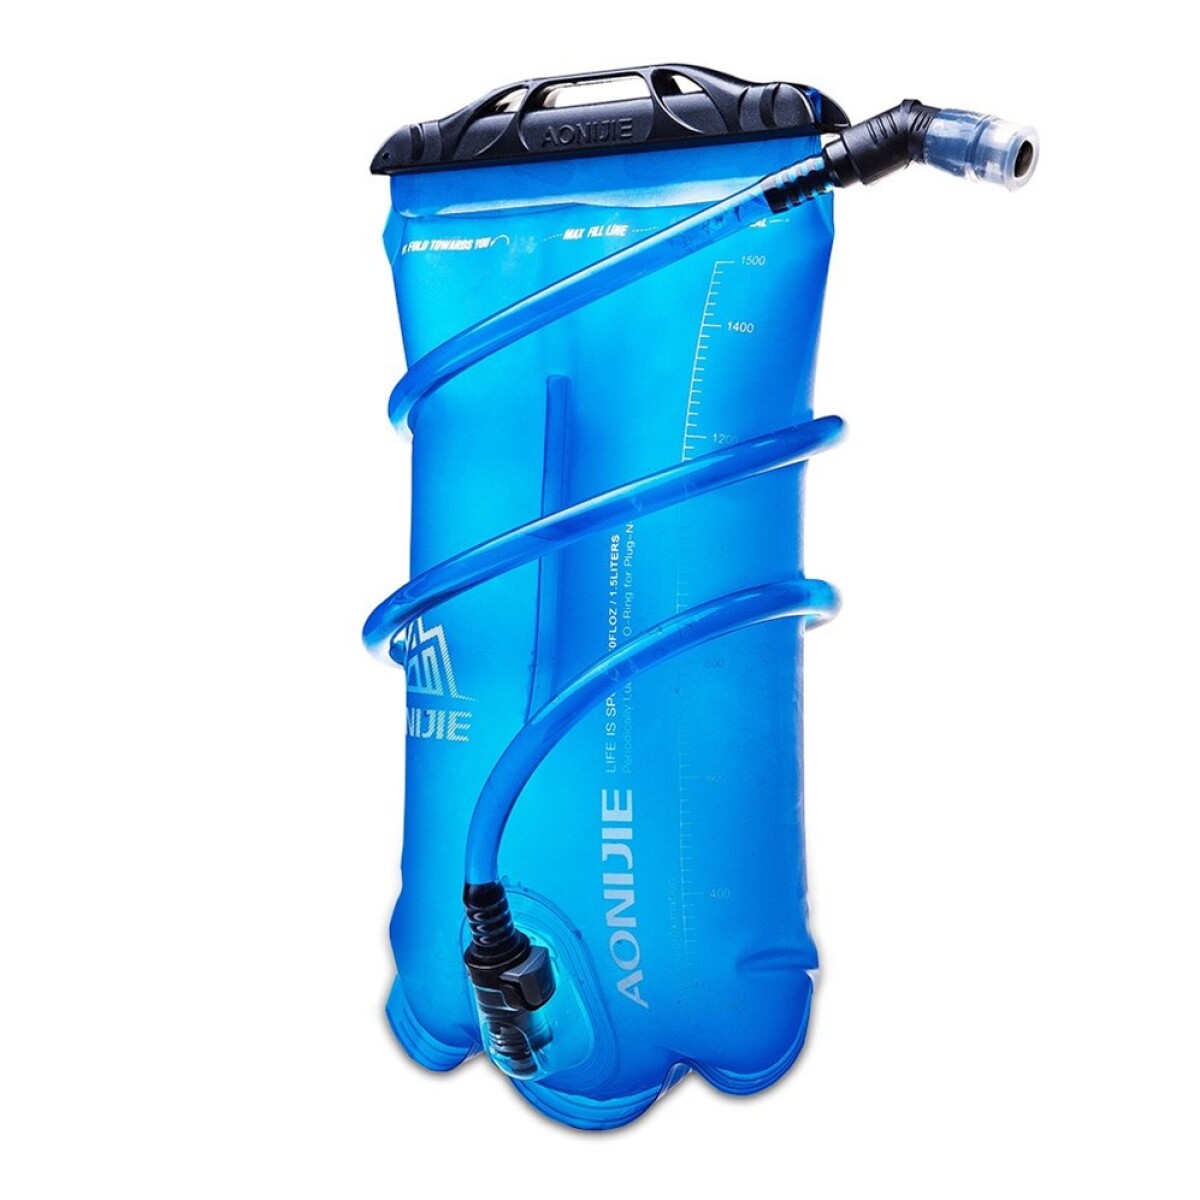 Bolsa De Agua Hidratacion Aonijie Water Bag - 1.5L 